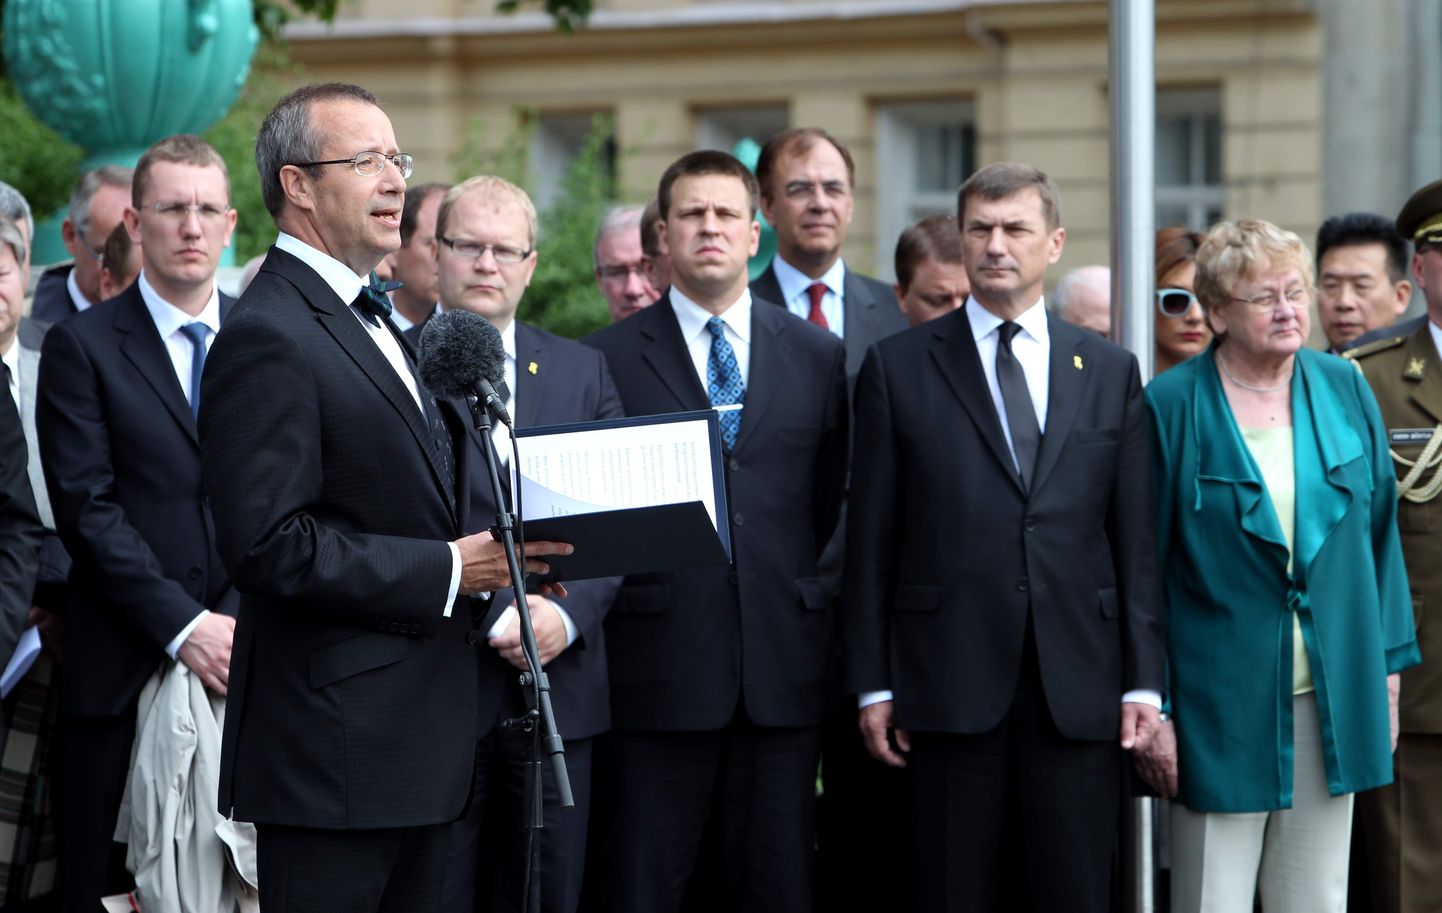 President Toomas Hendrik Ilves juuniküüditamise aastapäeval Vabaduse väljakul kõnet pidamas.